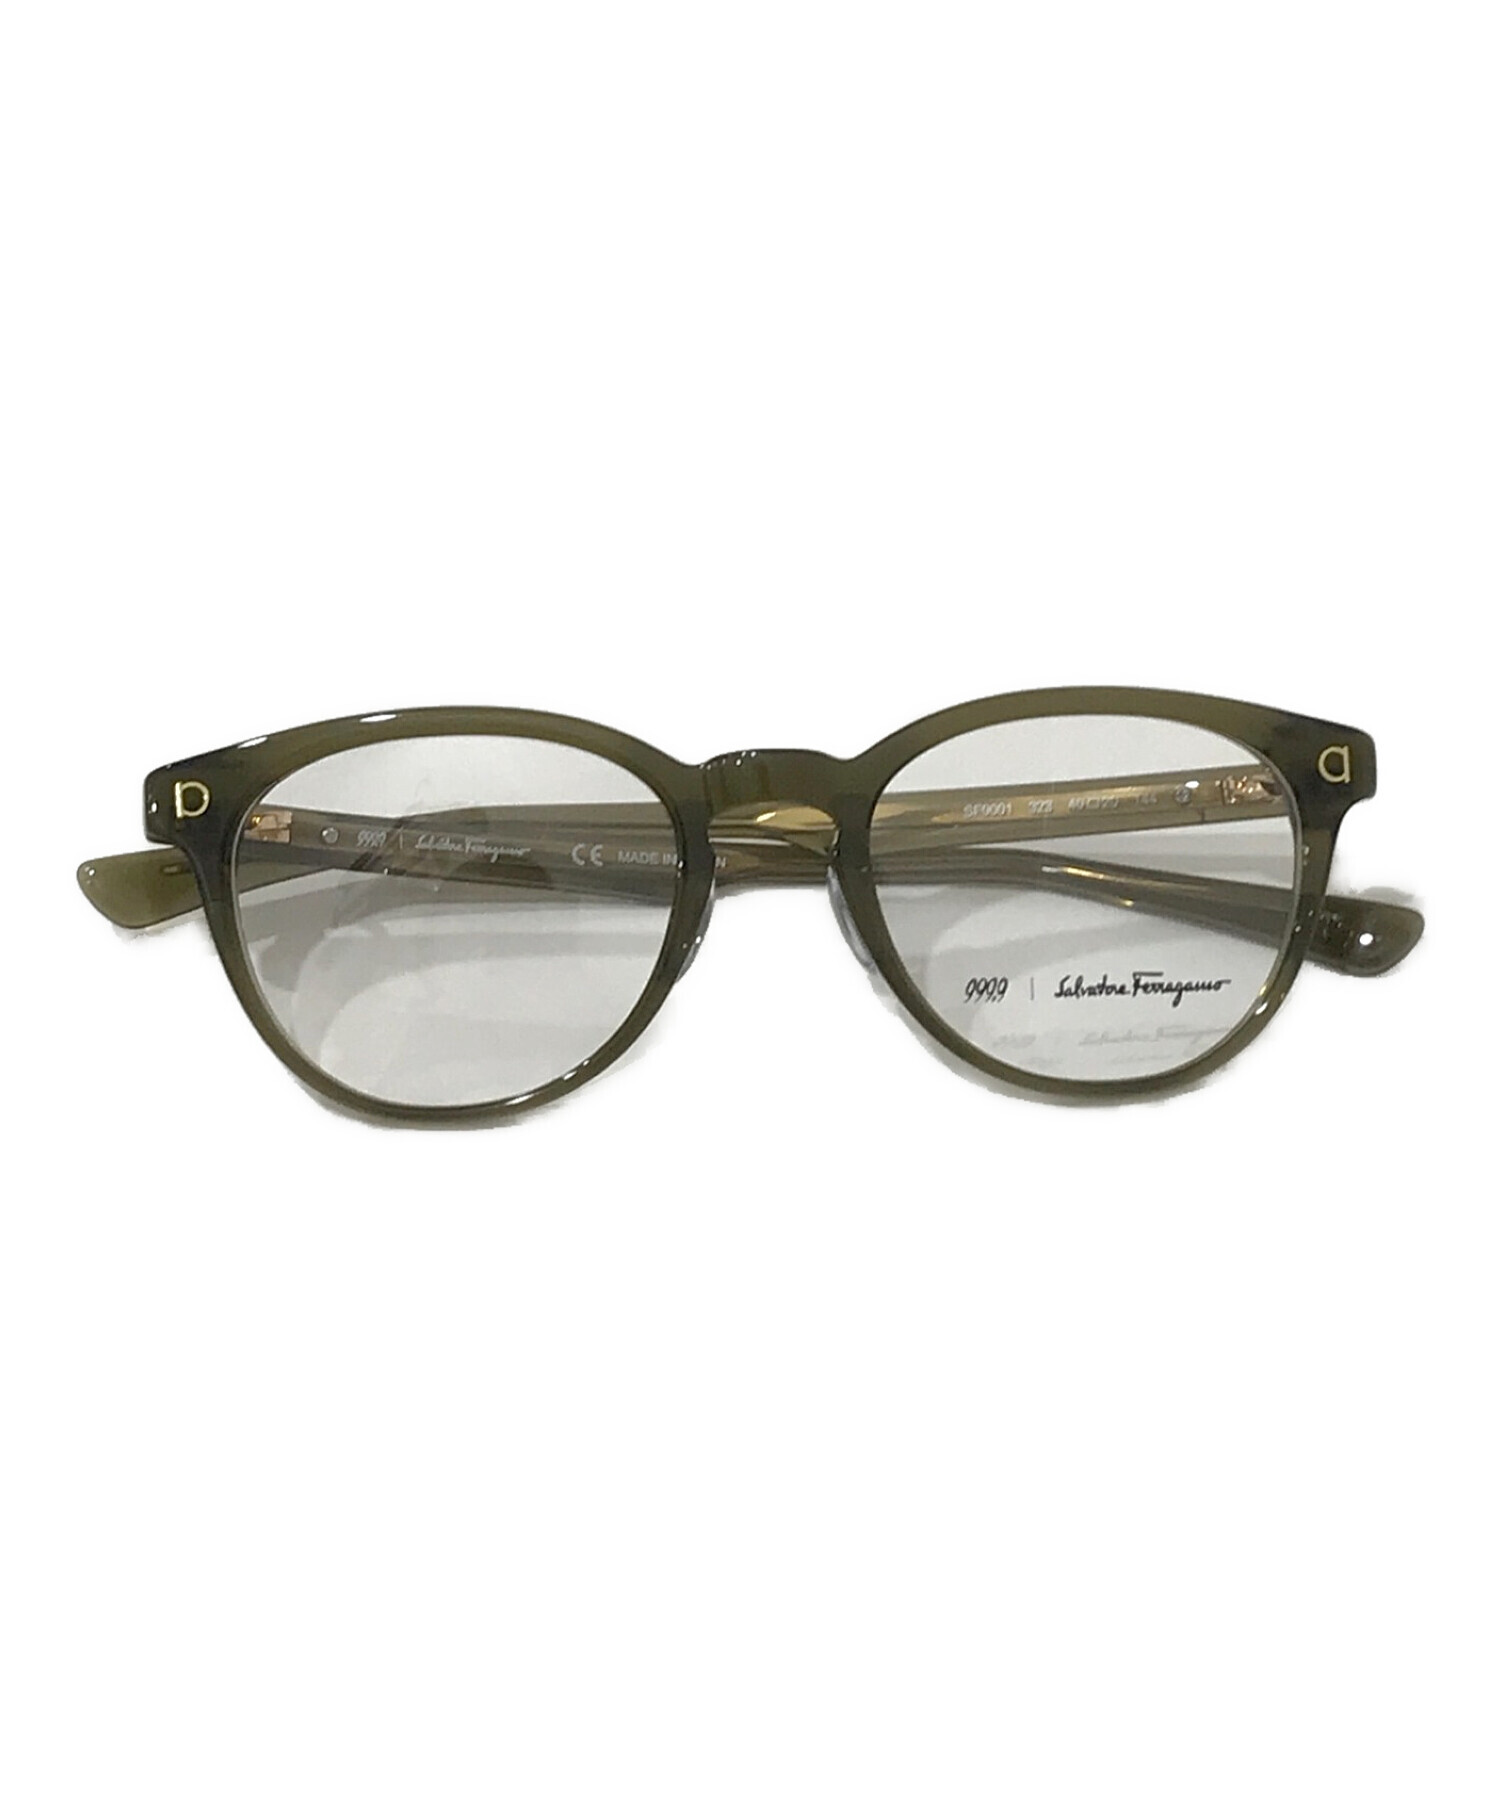 9999 フェラガモ コラボ 眼鏡 メガネ フォーナインズ - サングラス/メガネ